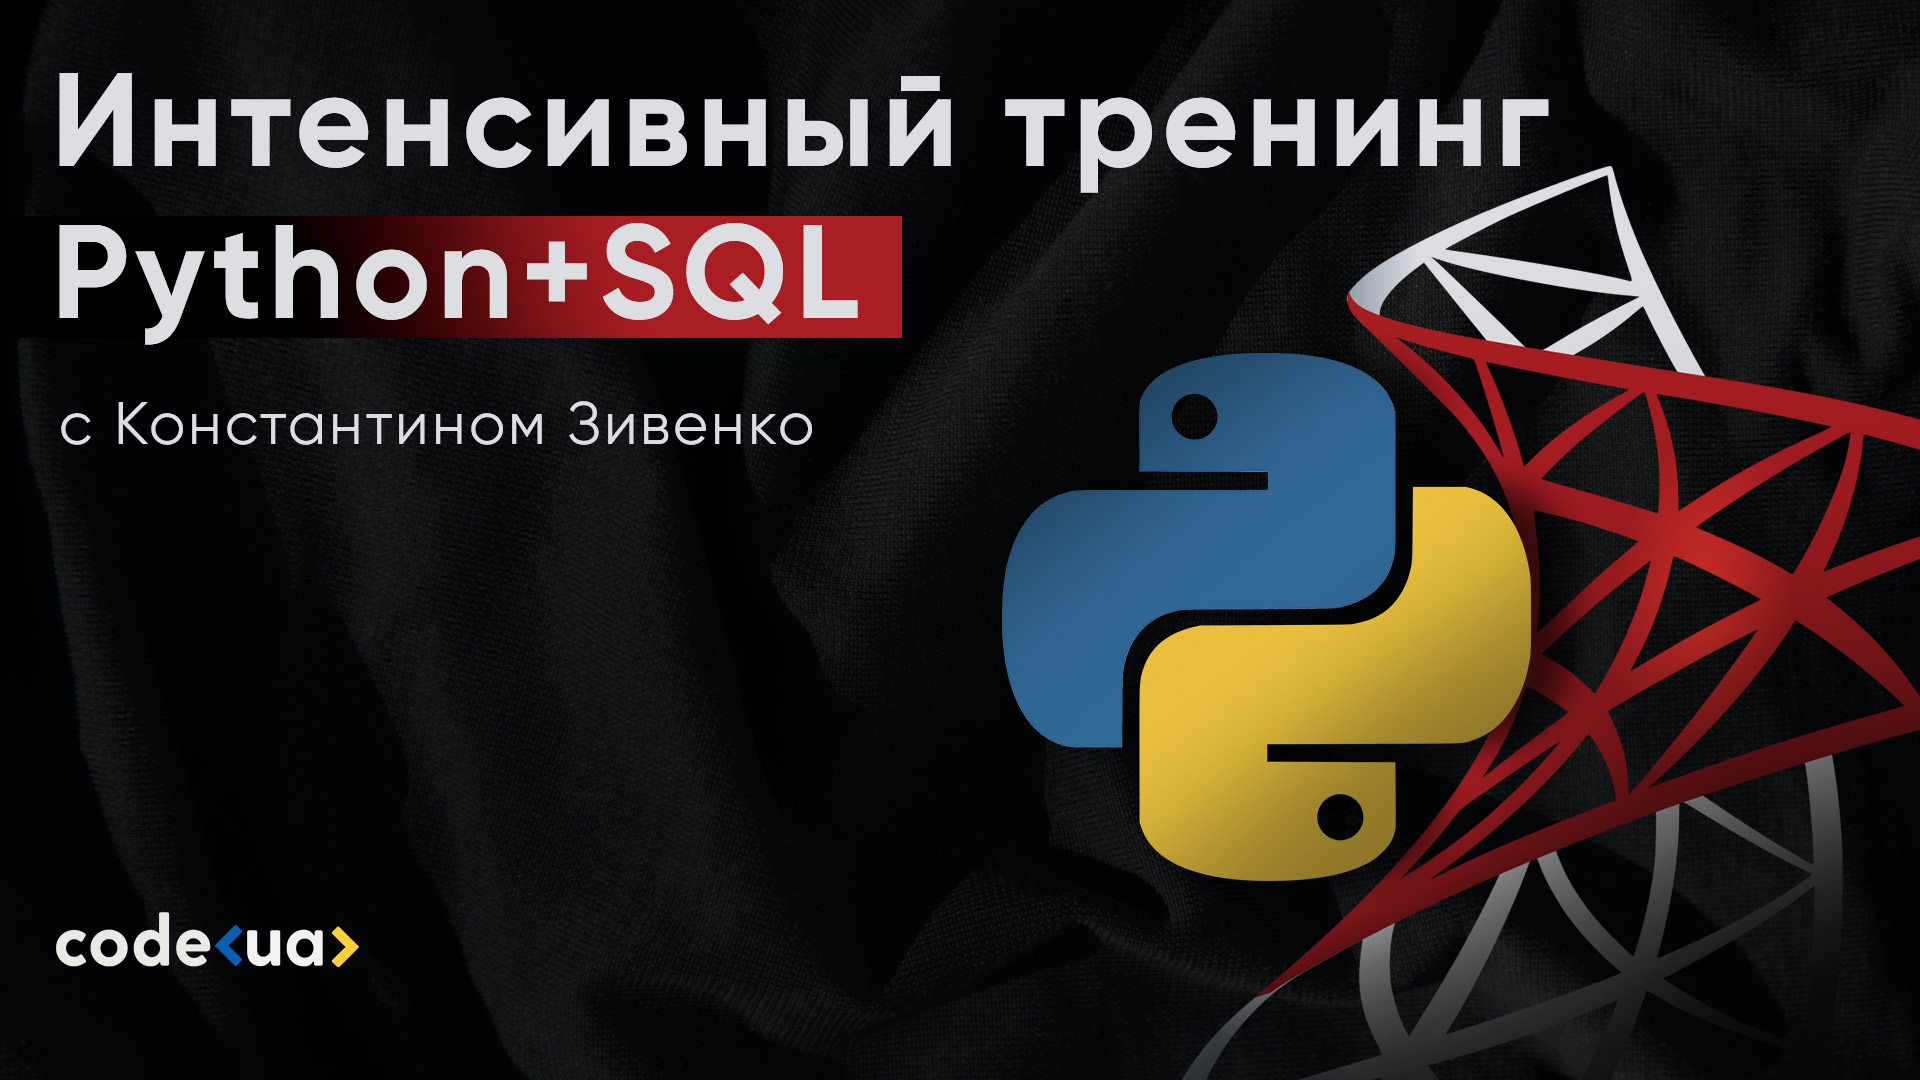 Обложка вебинара Python+SQL: как начать использовать БД и писать SQL-запросы